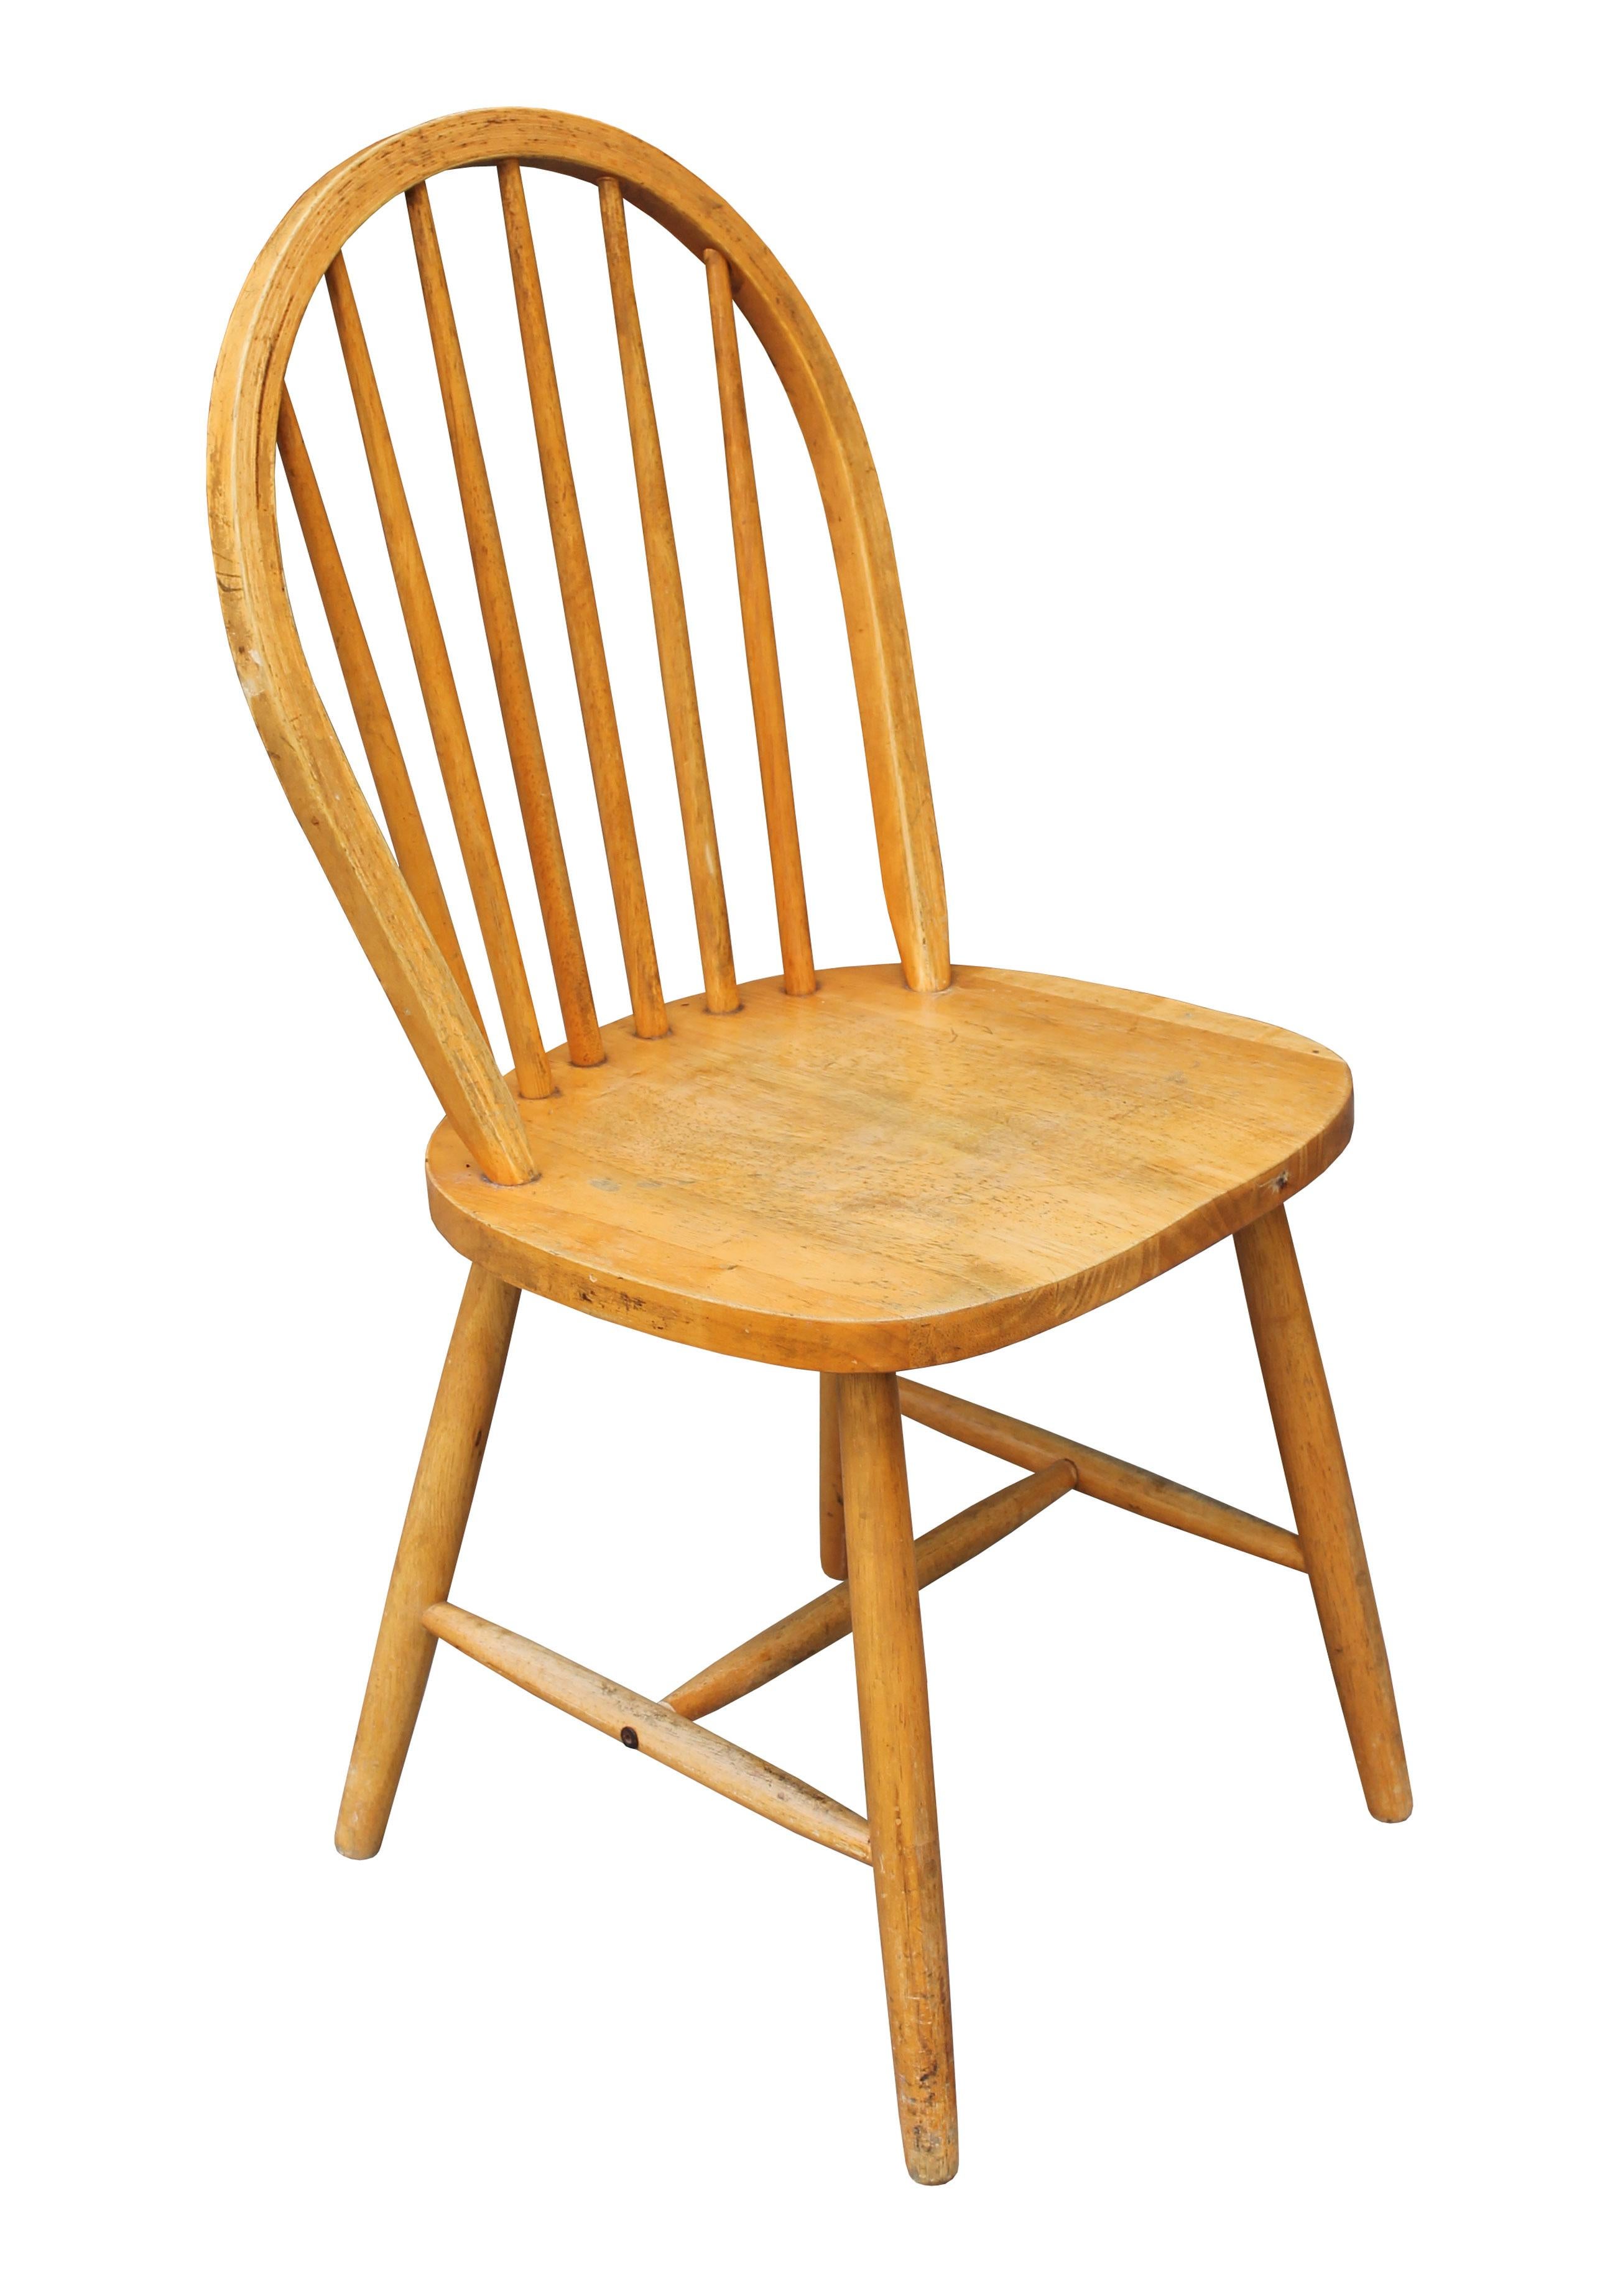 Deux chaises de salle à manger conçues d'après les chaises Windsor originales d'Ercol, modèle 400. Tous deux présentent un design classique avec une barre arrière courbée à la vapeur qui forme un profil épuré. Ils ont également les mêmes pieds et